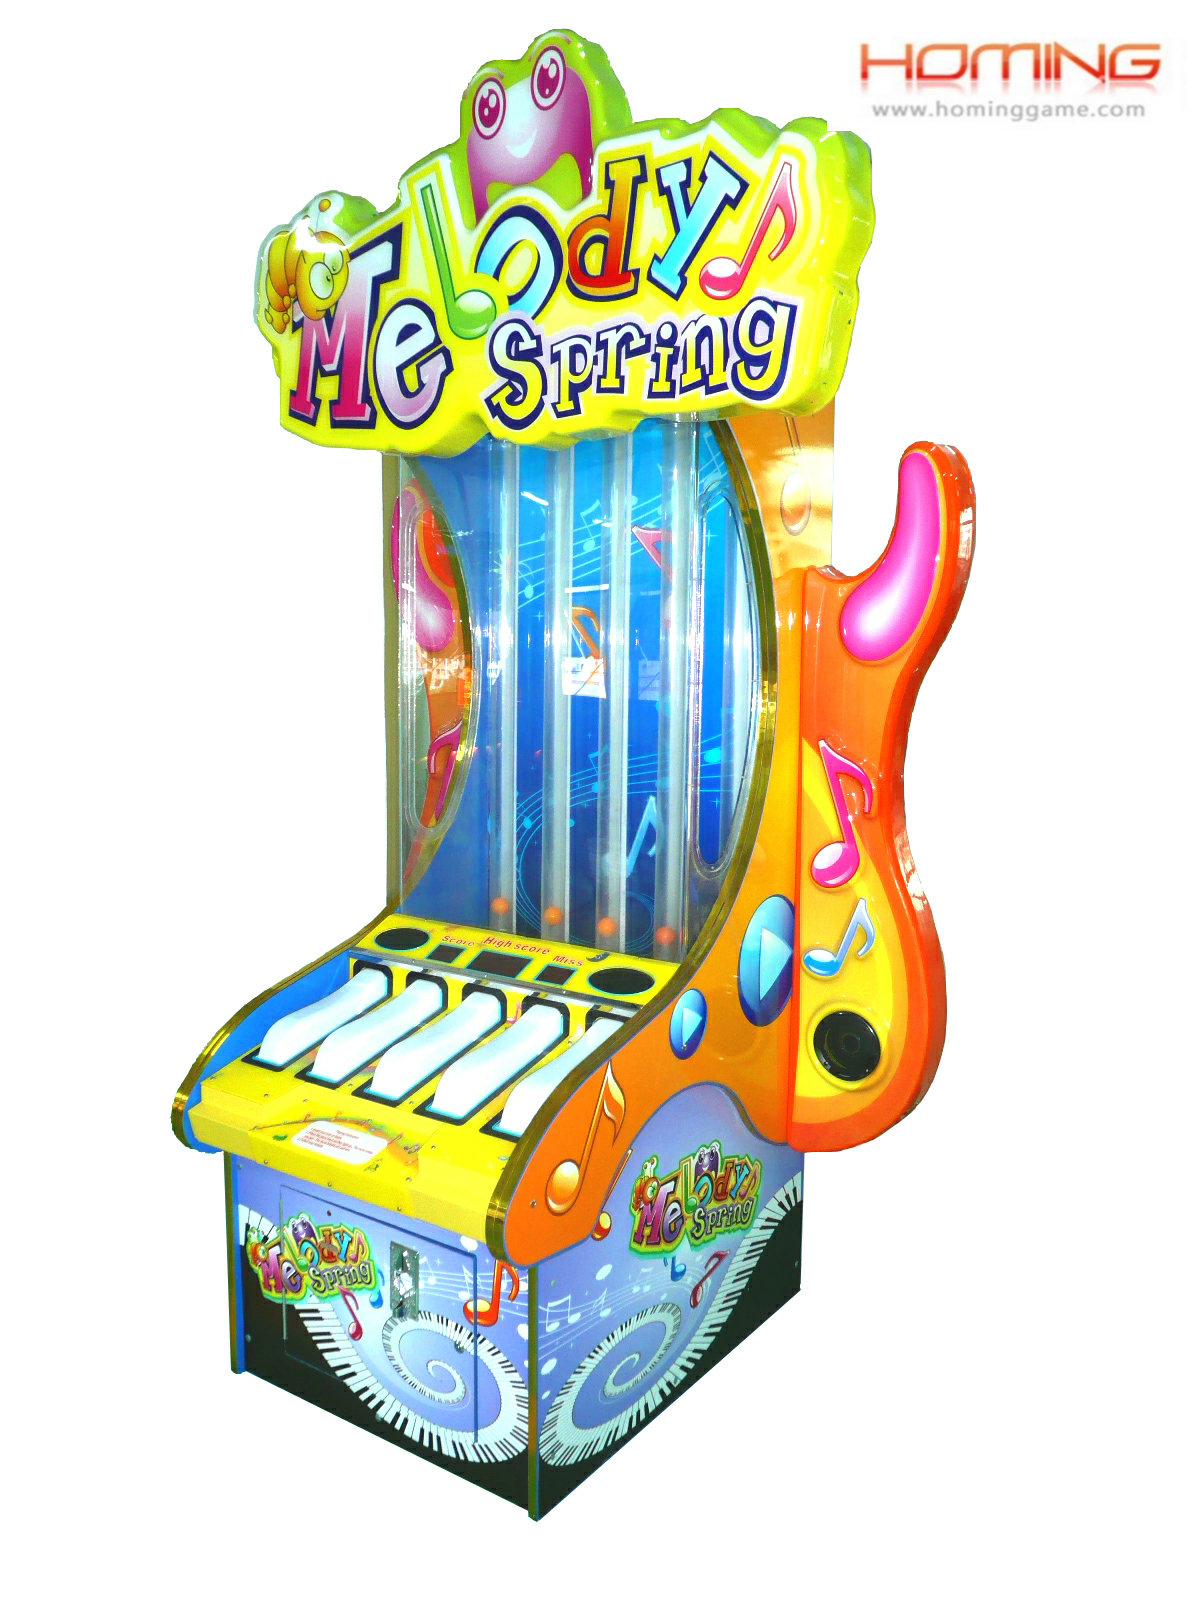 Melody Spring redemption game machine,redemption game machine,game machine,arcade game machine,game equipment,coin operated game machine,game zone game machine